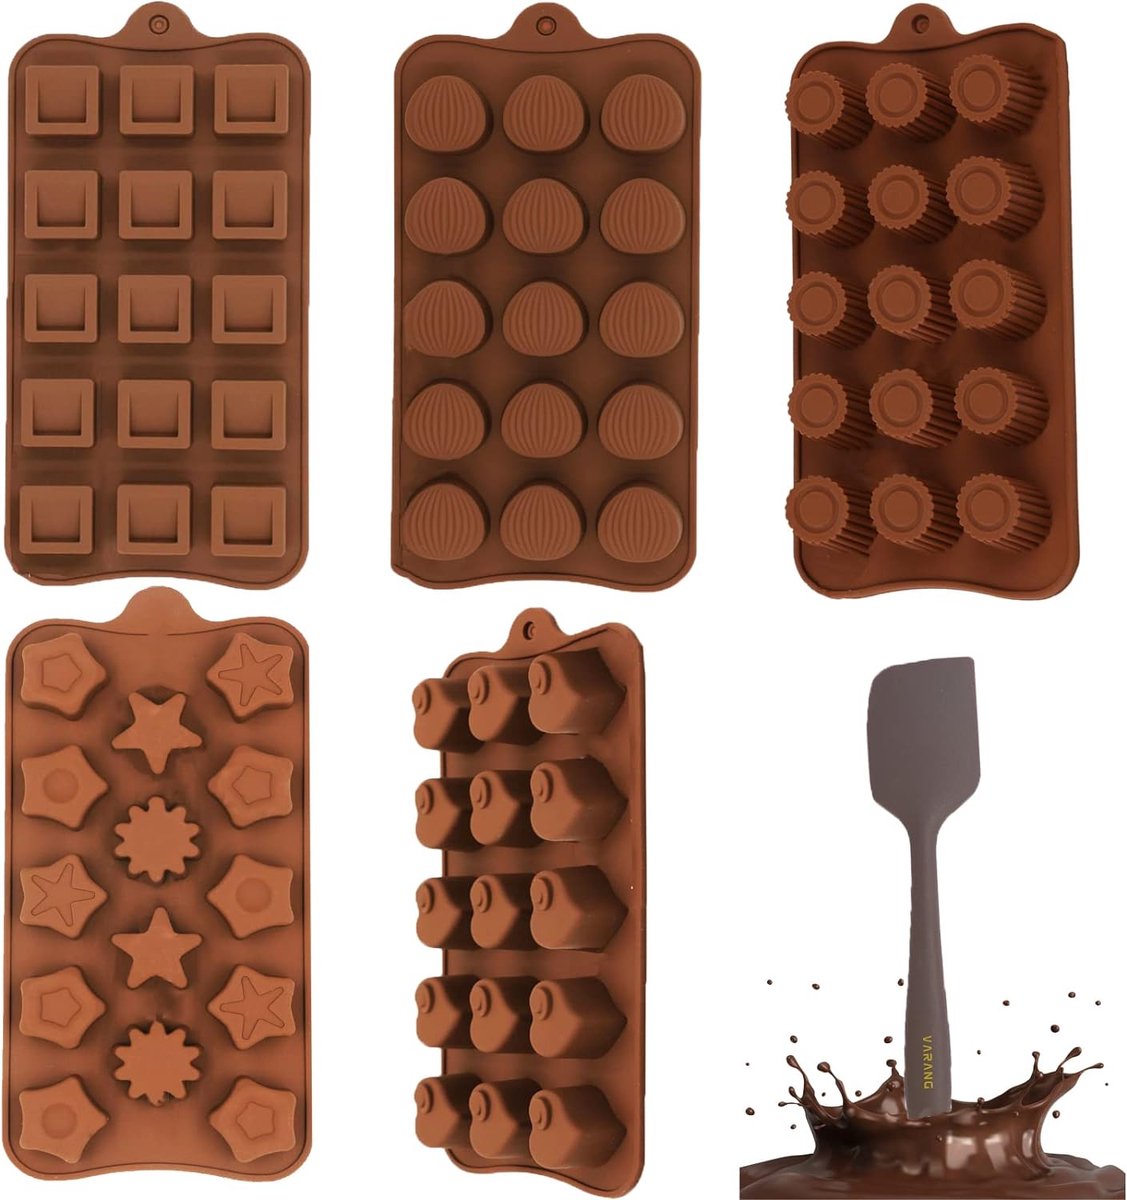 Chocoladevorm siliconen, 5 stuks siliconen vormen chocolade en 1 deegschraper, bonbonvorm hart, siliconen vormpjes voor chocolademuffin-cupcakes (5 modellen)